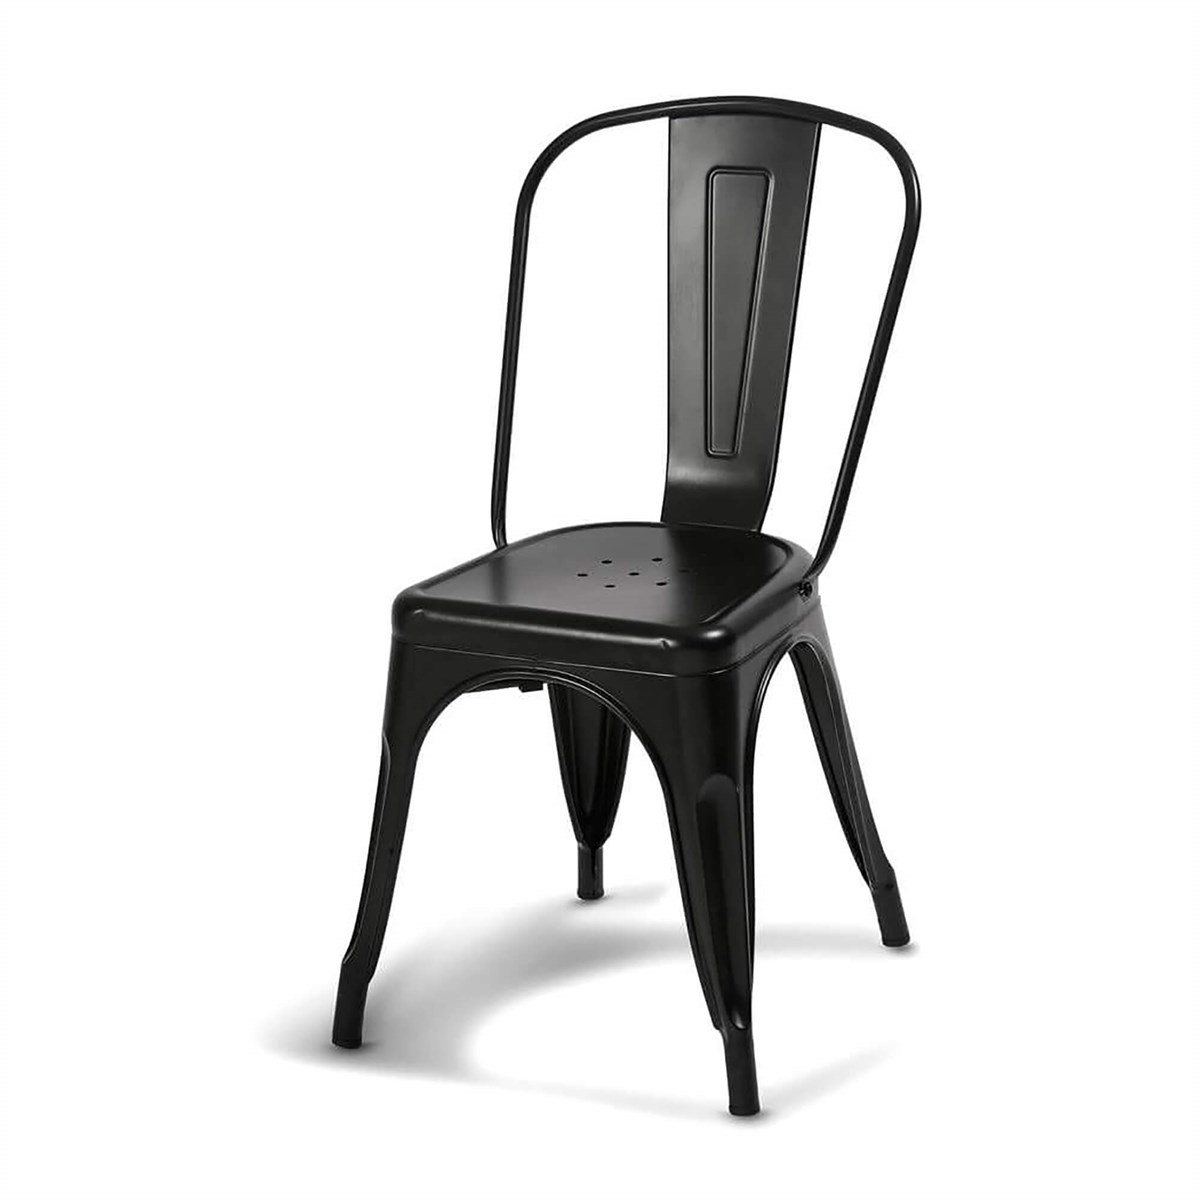 Sandalye Modelleri | Tolix Sandalye | Ofis Sandalyeleri